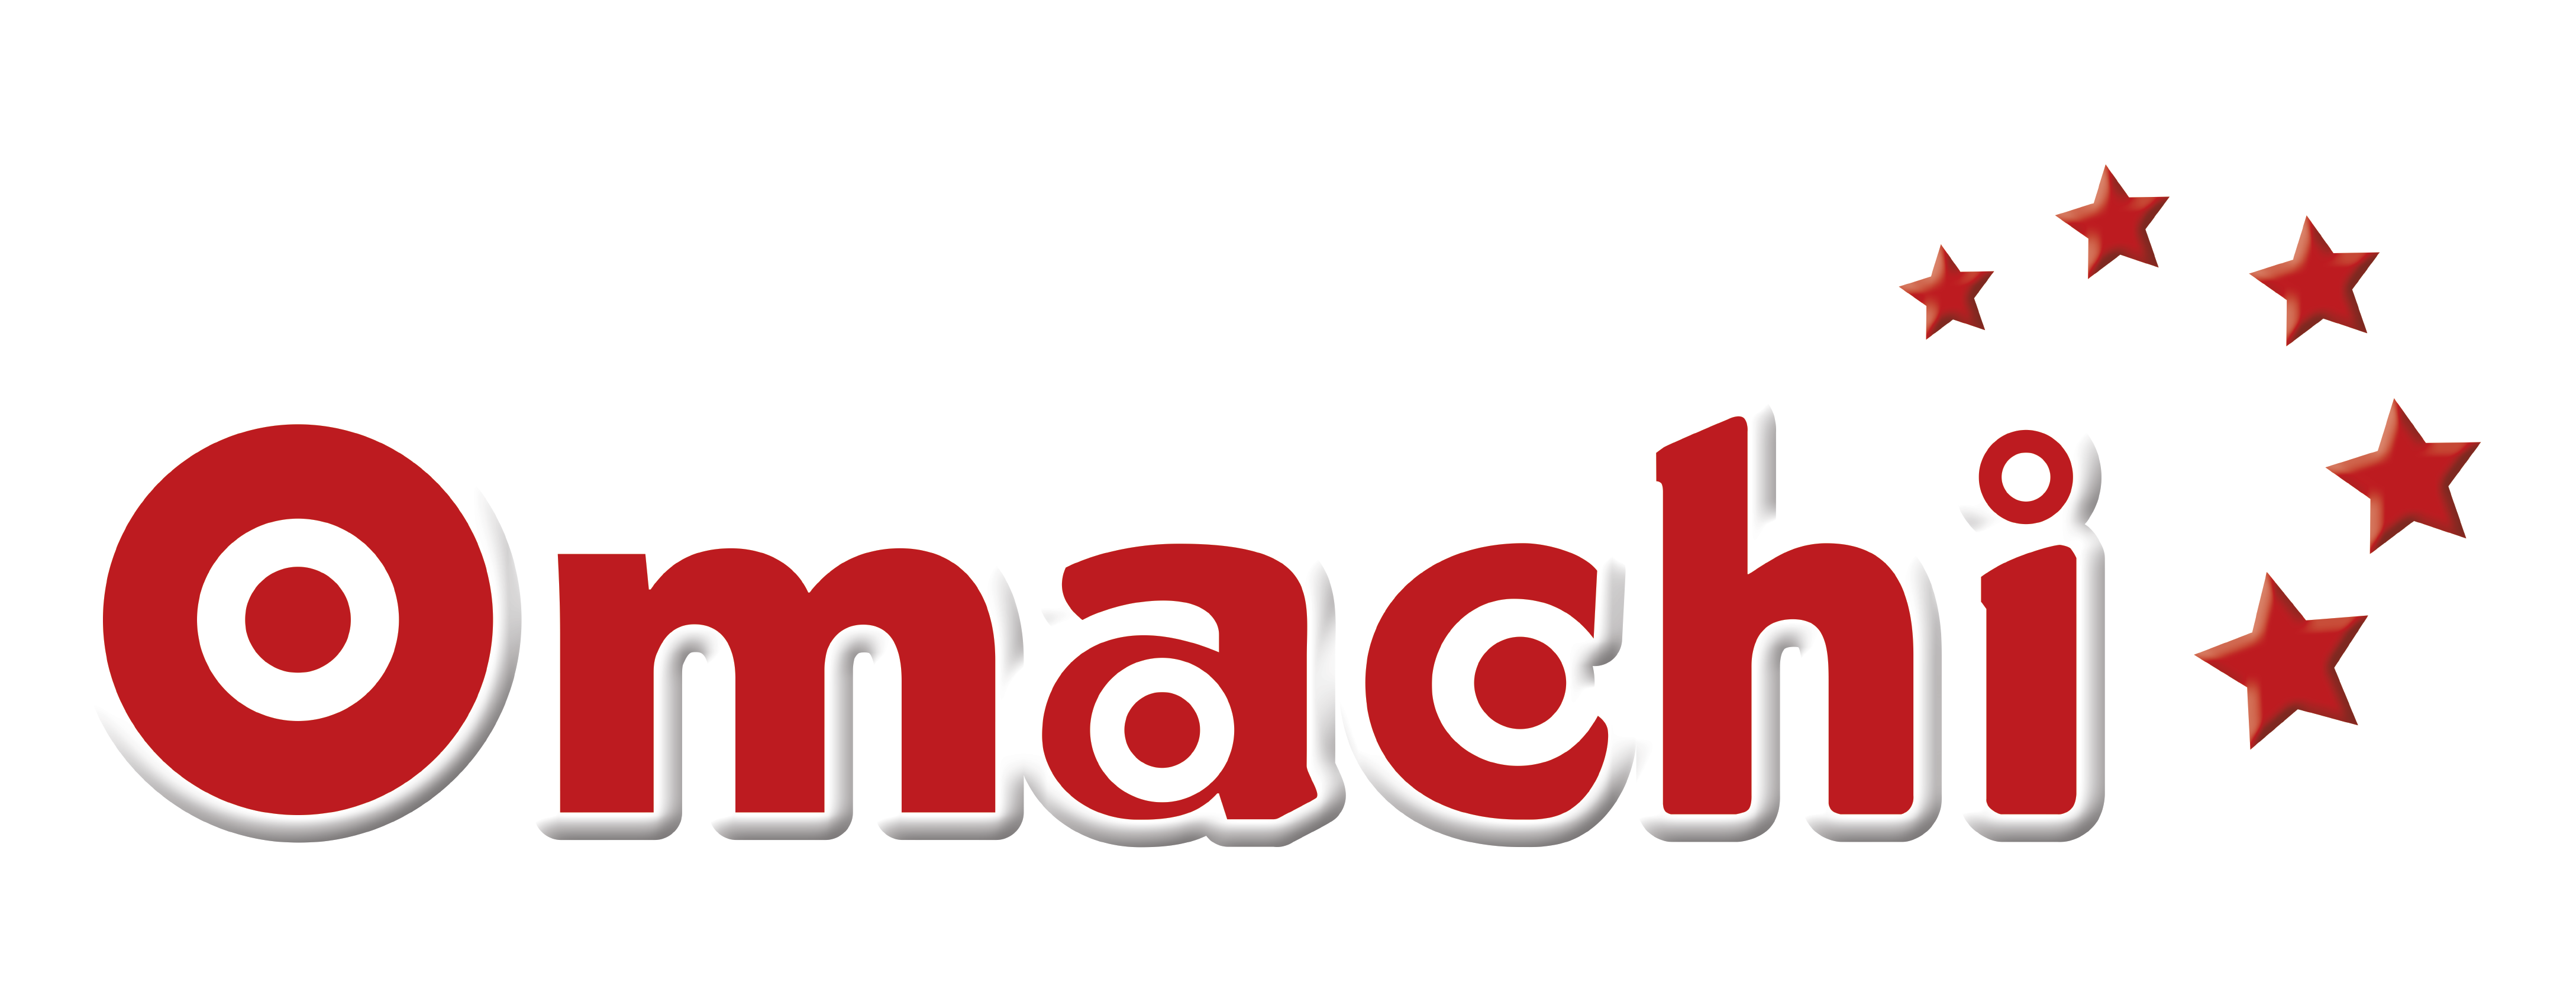 Omachi-logo